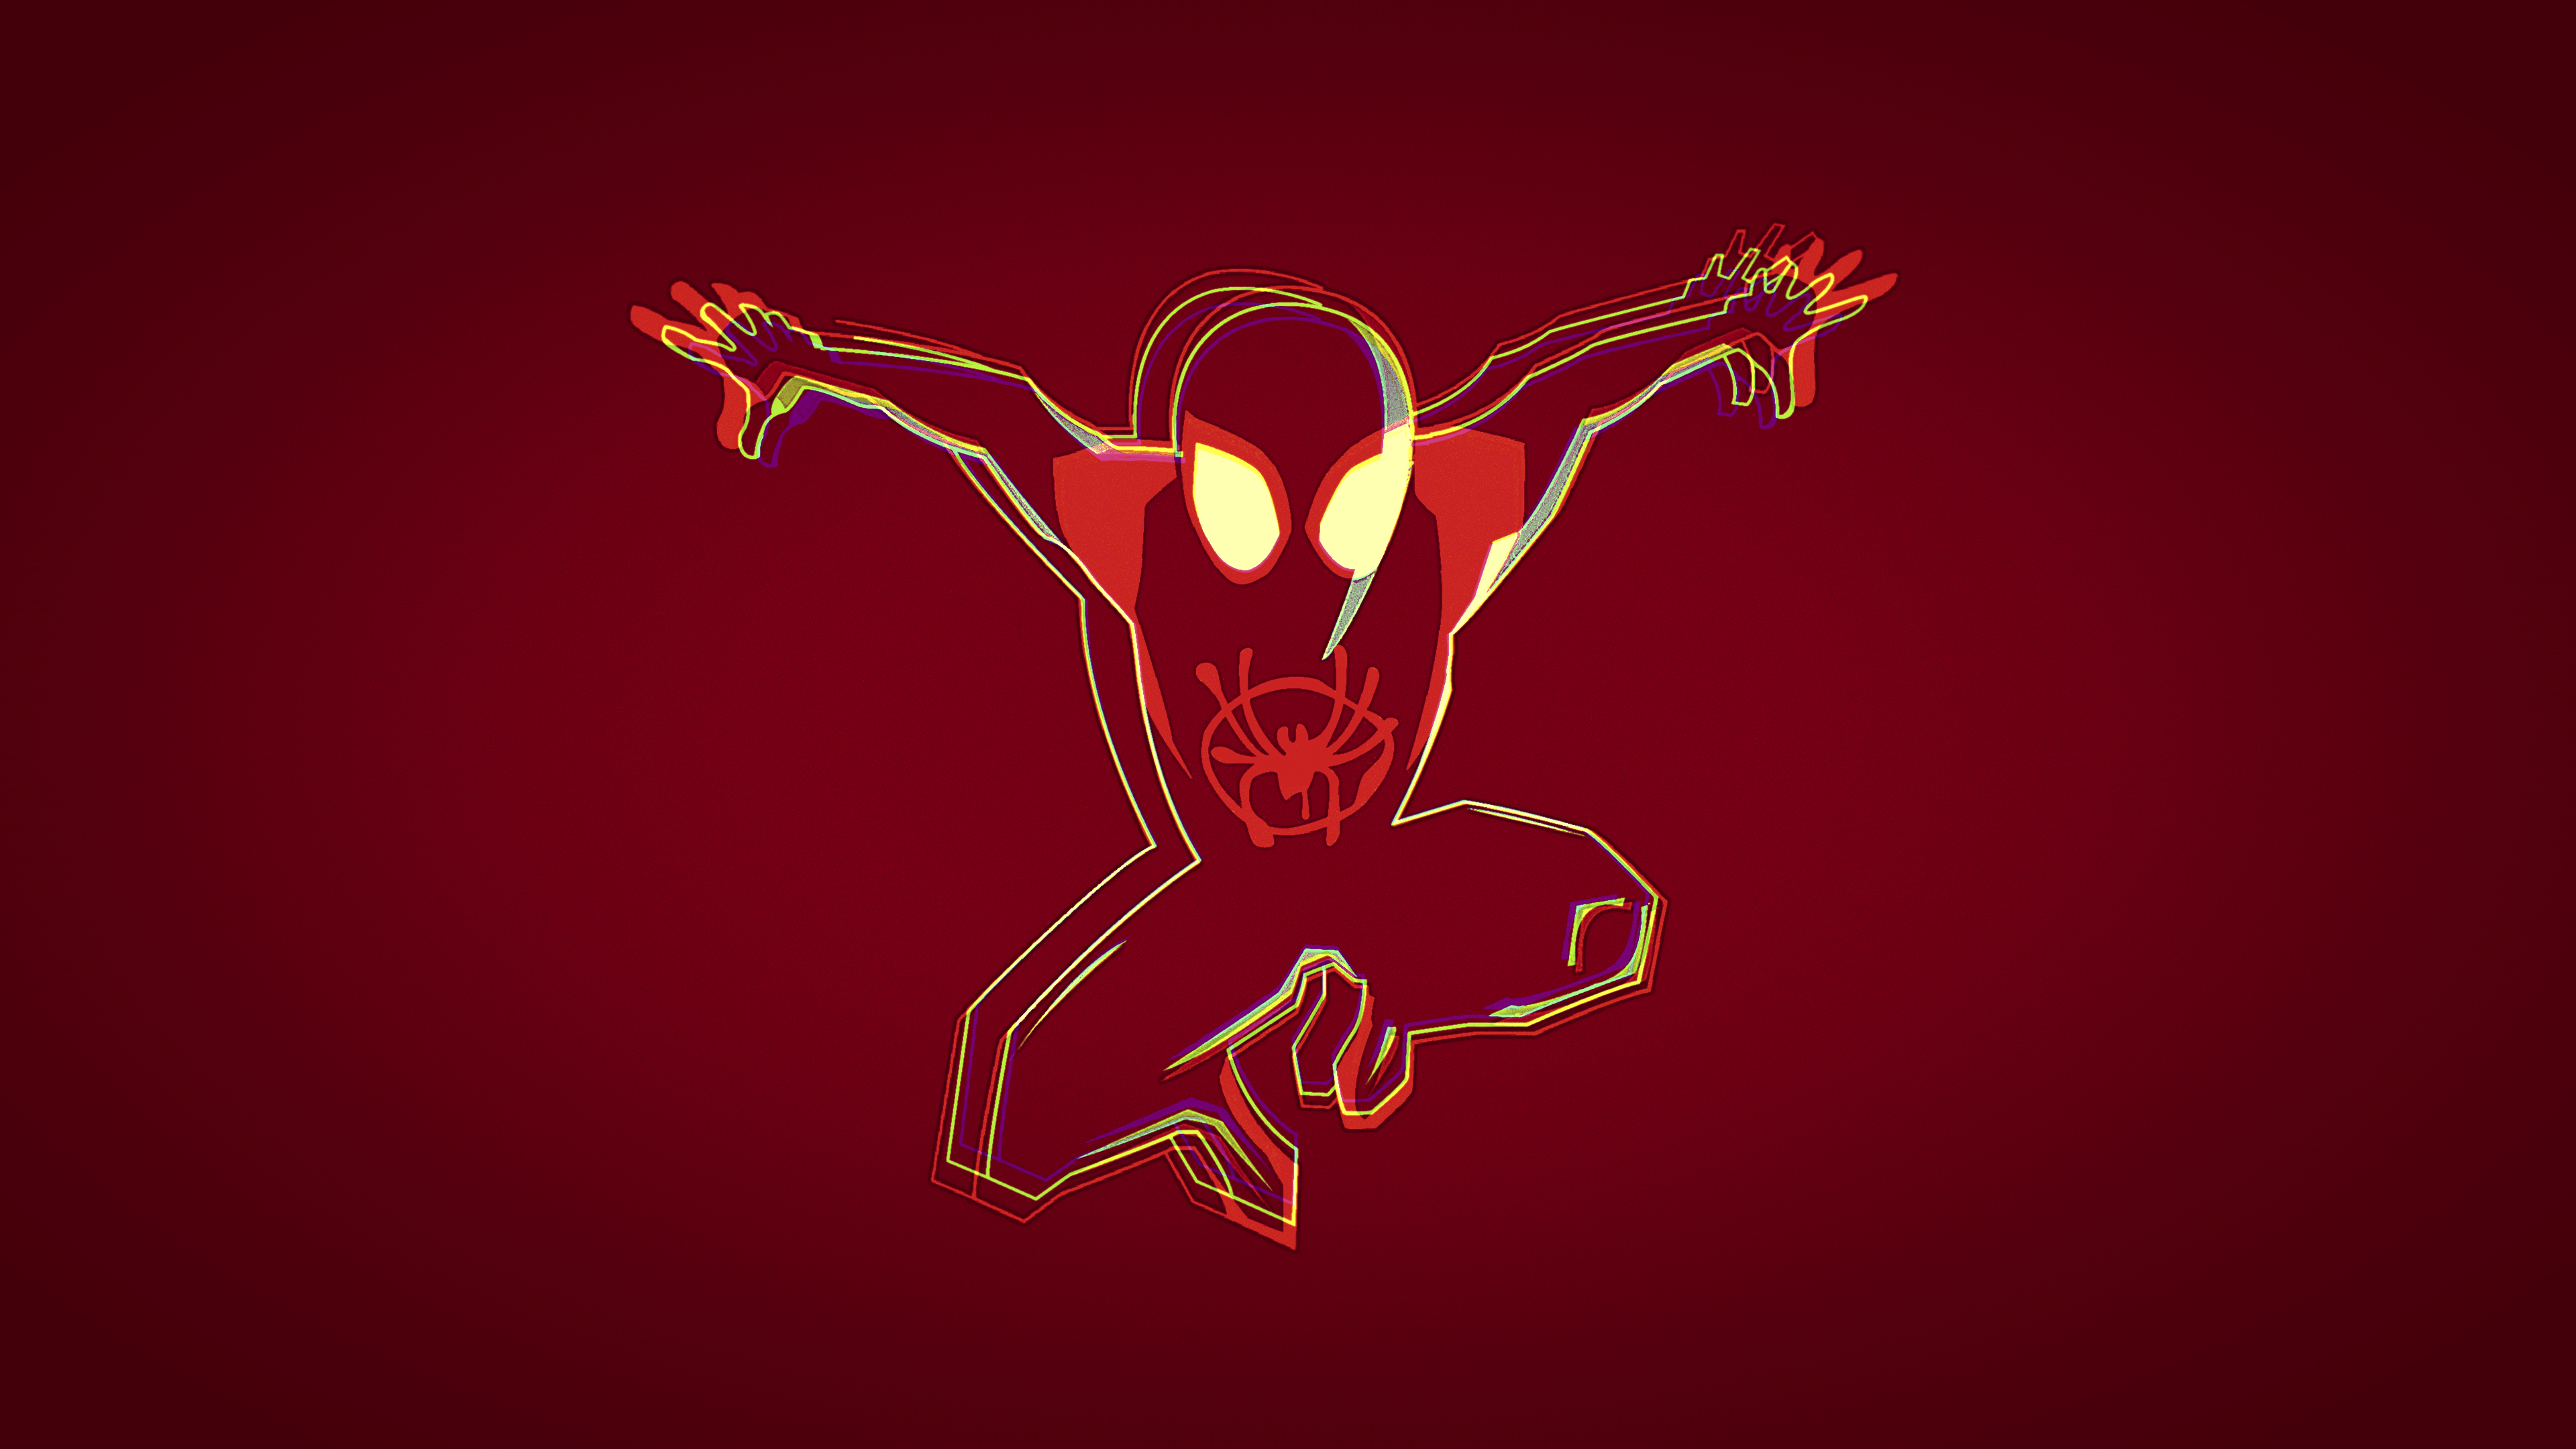 General 3840x2160 Spider-Man Spider-Man: Into the Spider-Verse digital art red artwork red background